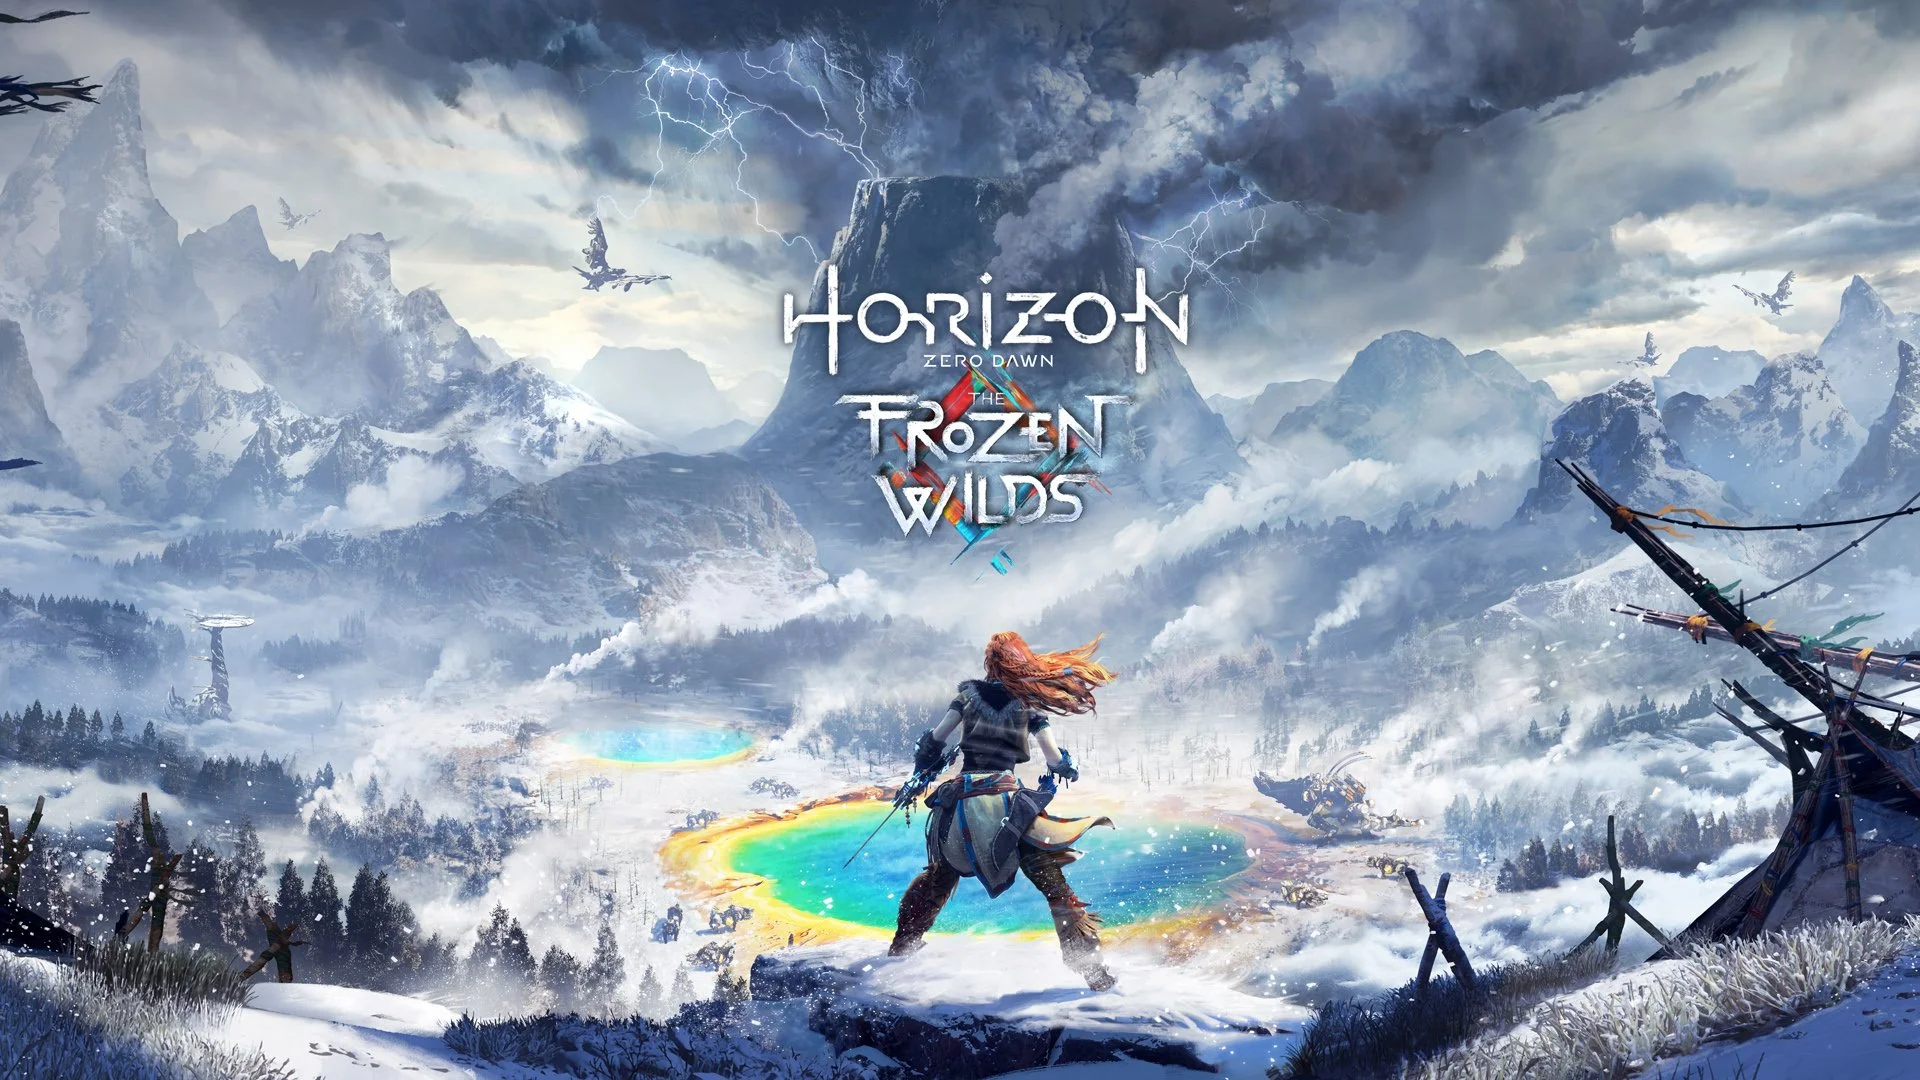 Мы начинаем проходить Horizon Zero Dawn: The Frozen Wilds. Это большое и единственное дополнение для одной из лучших игр этого года. Никаких вам костюмчиков и испытаний (хотя они тоже есть) — полноценный новый регион и огромная сюжетная арка. Должно быть интересно!